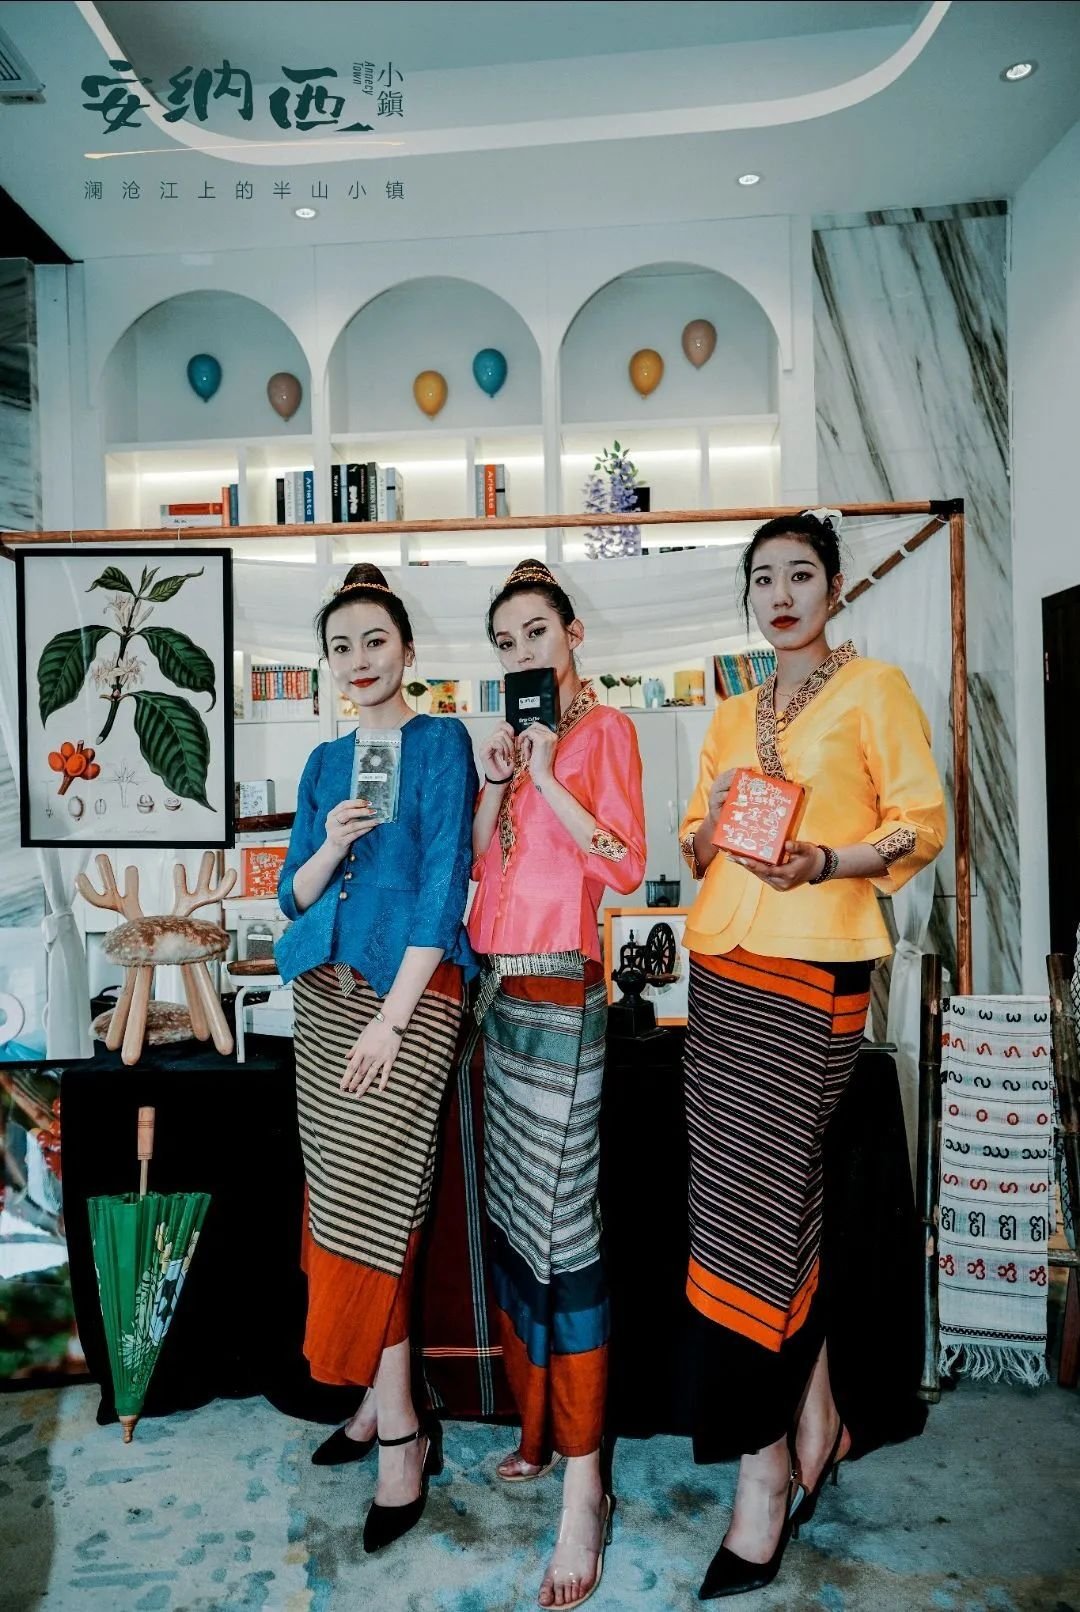 安纳西小镇丨六国齐炫老挝show time ，带您领略不一样的老挝风情